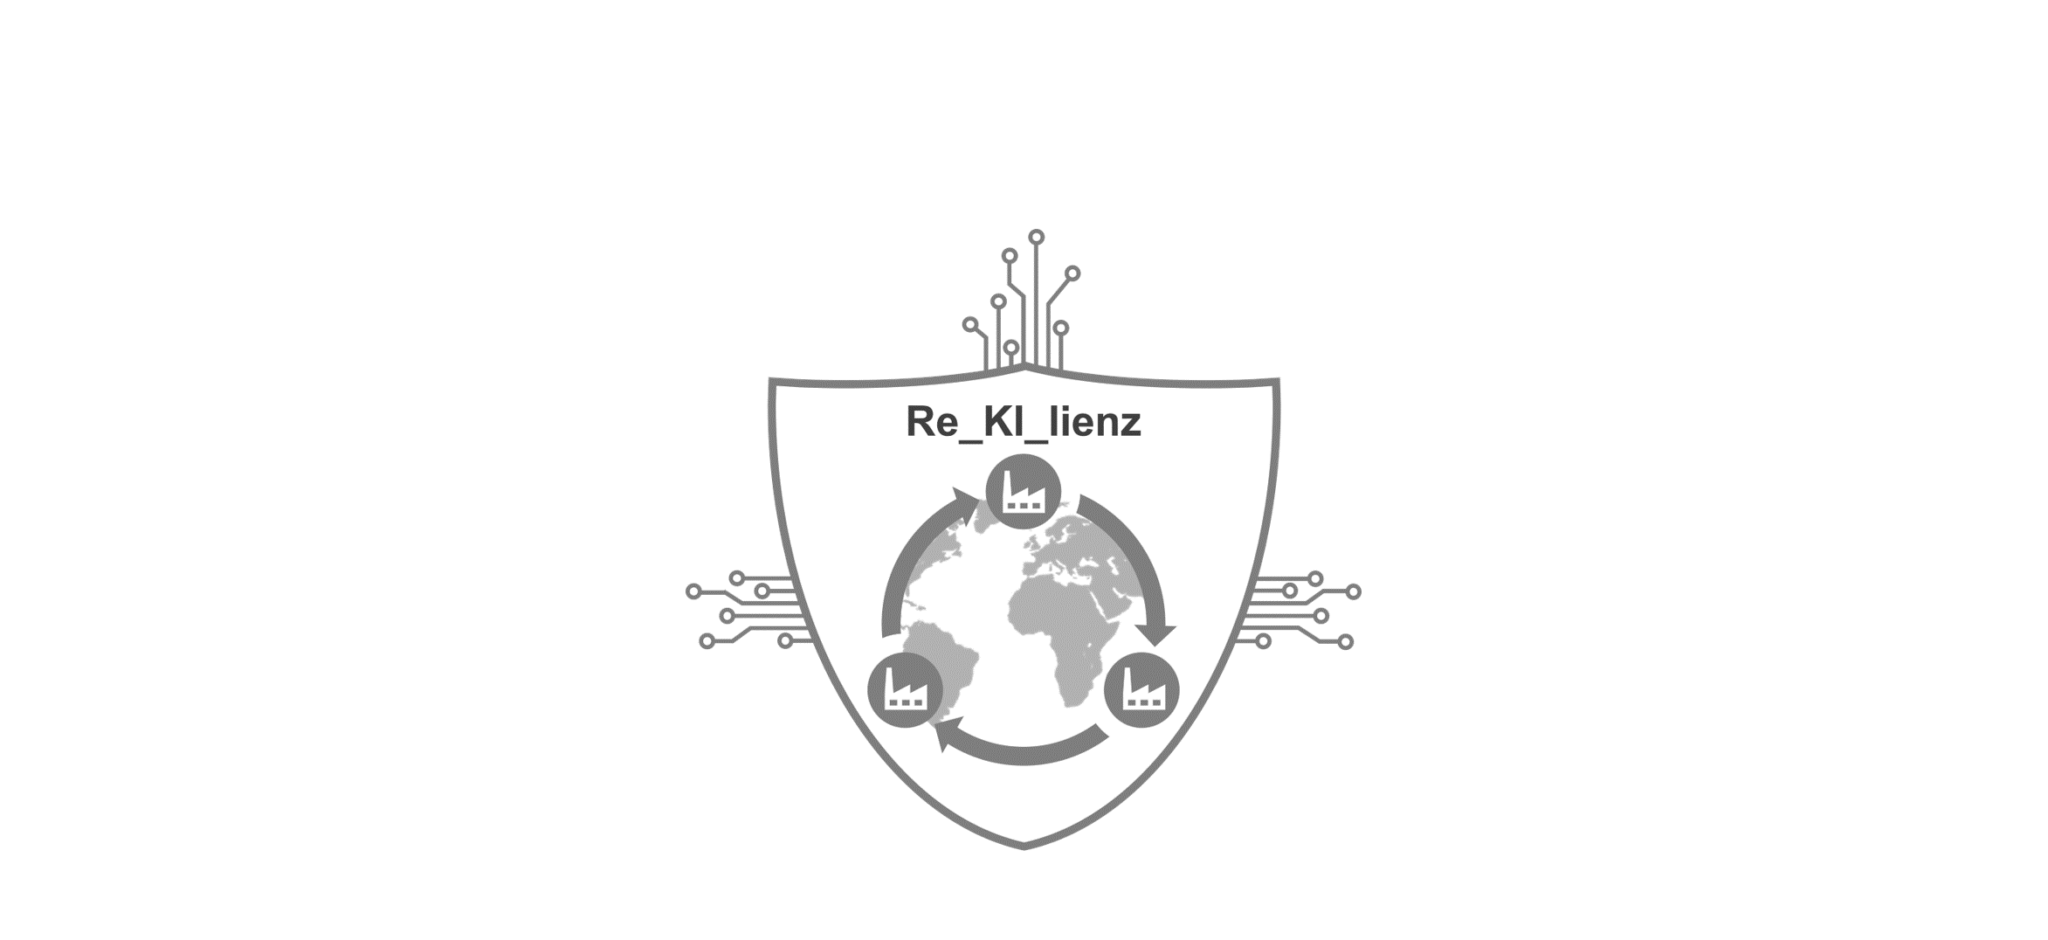 Re_KI_lienz offiziell gestartet!